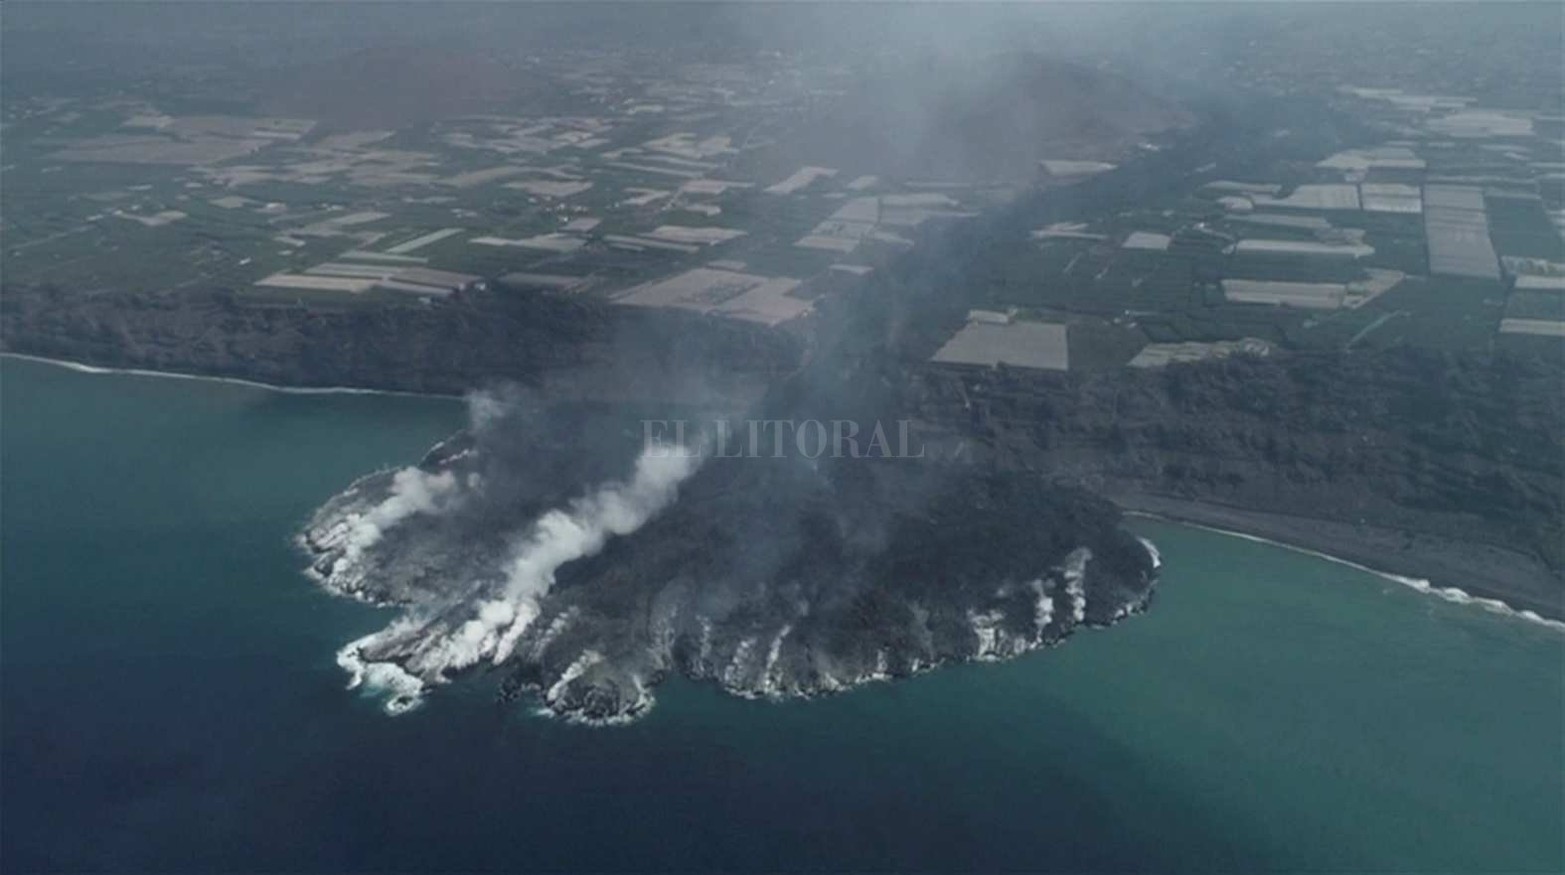 Erupción del volcán en La Palma, una de las islas de la comunidad de Canarias, España. Una superficie de 27,5 hectáreas ha cubierto la llegada de lava al mar. En su camino ha inutilizado 28,3 kilómetros de carreteras, ha destruido 880 edificaciones y dañado otras 105.